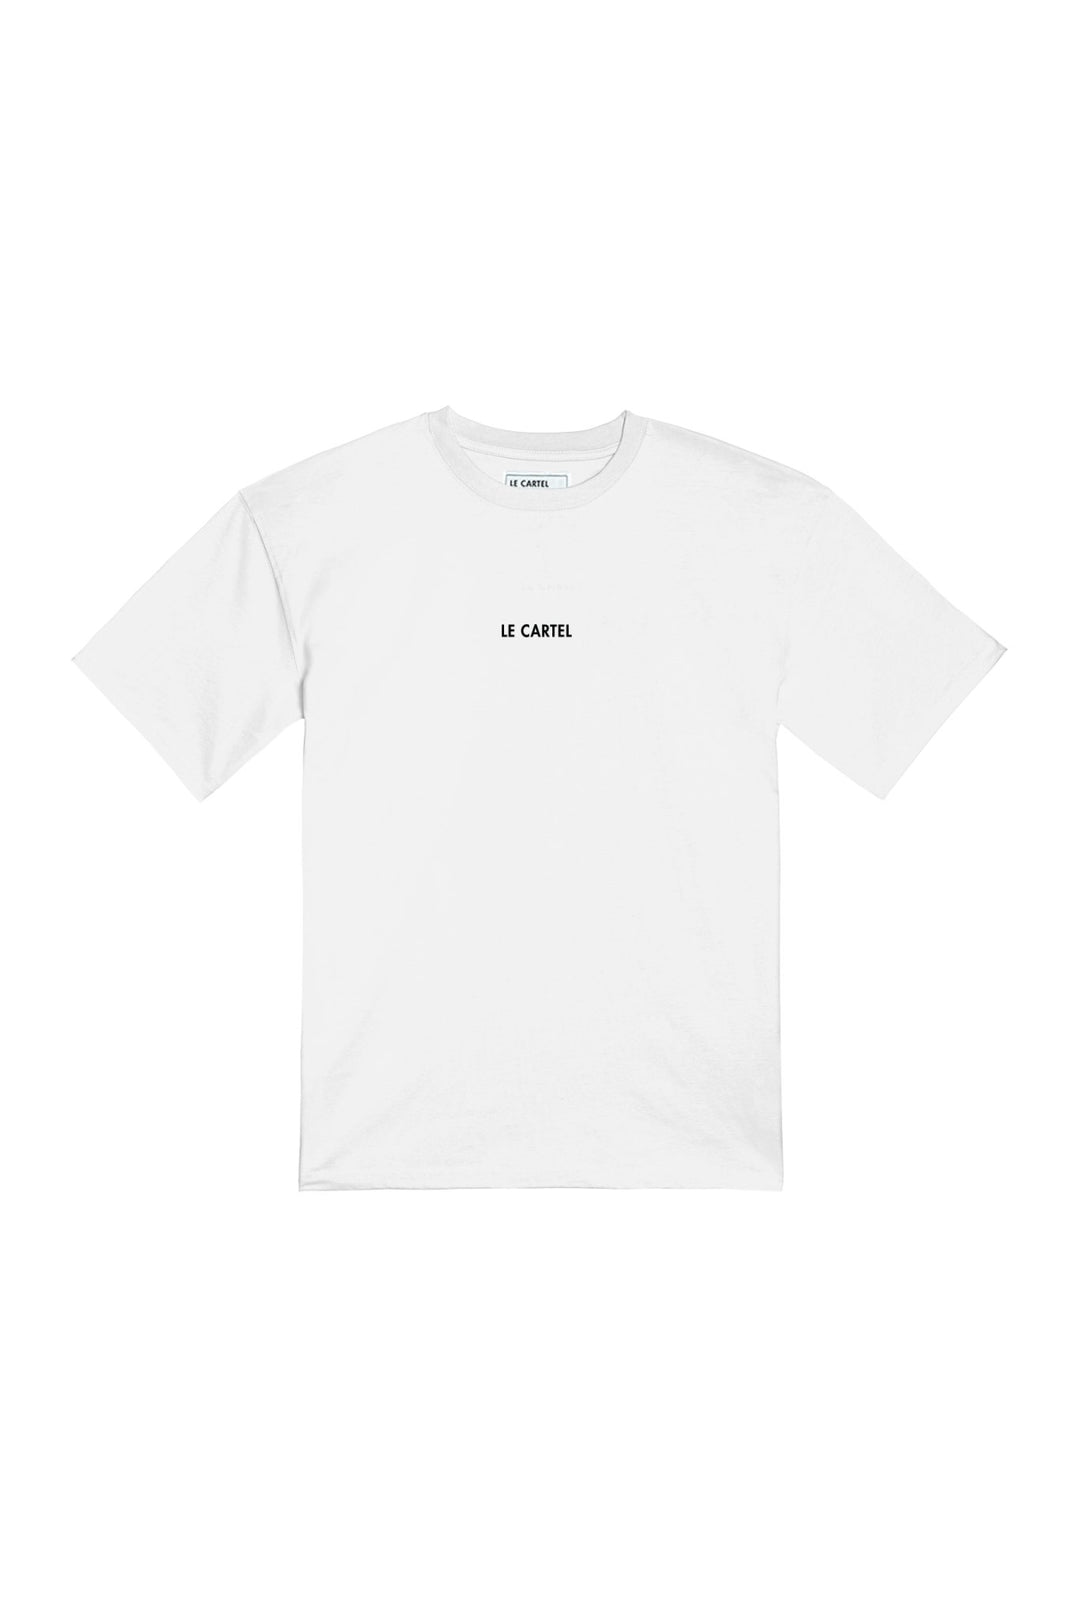 L'AMOUR・T-shirt unisexe・Blanc - Le Cartel